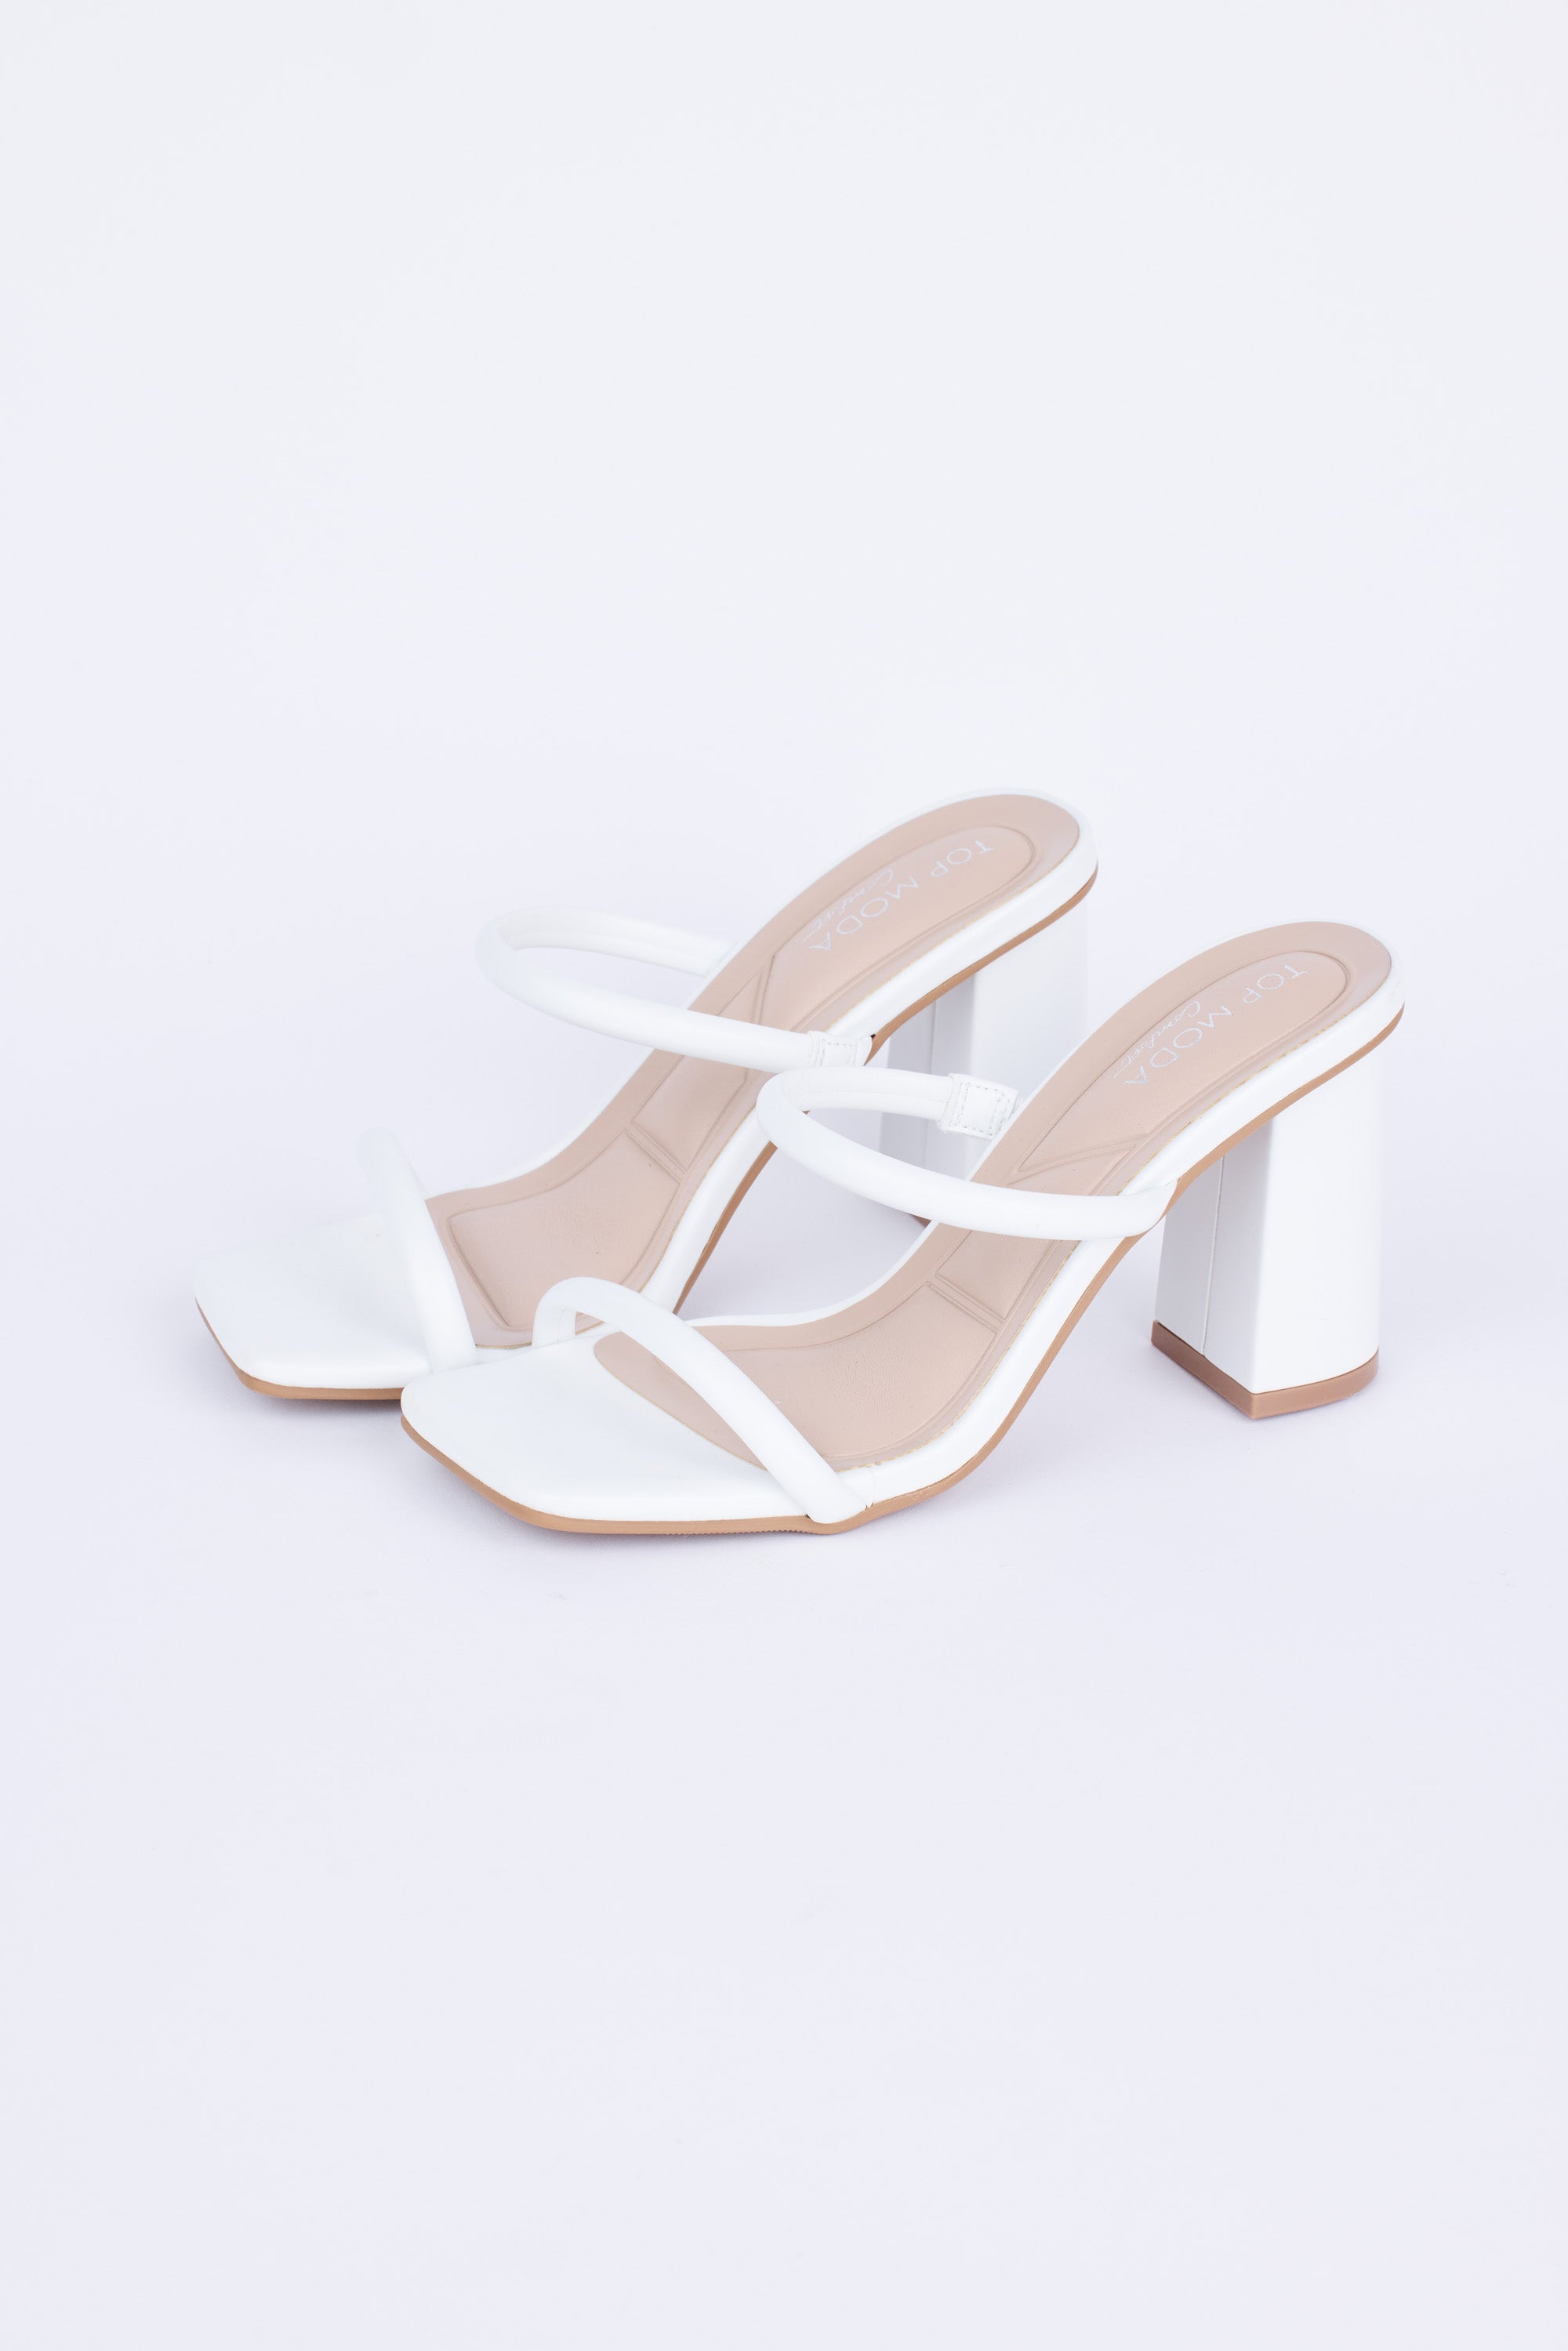 Kayce Heels- White